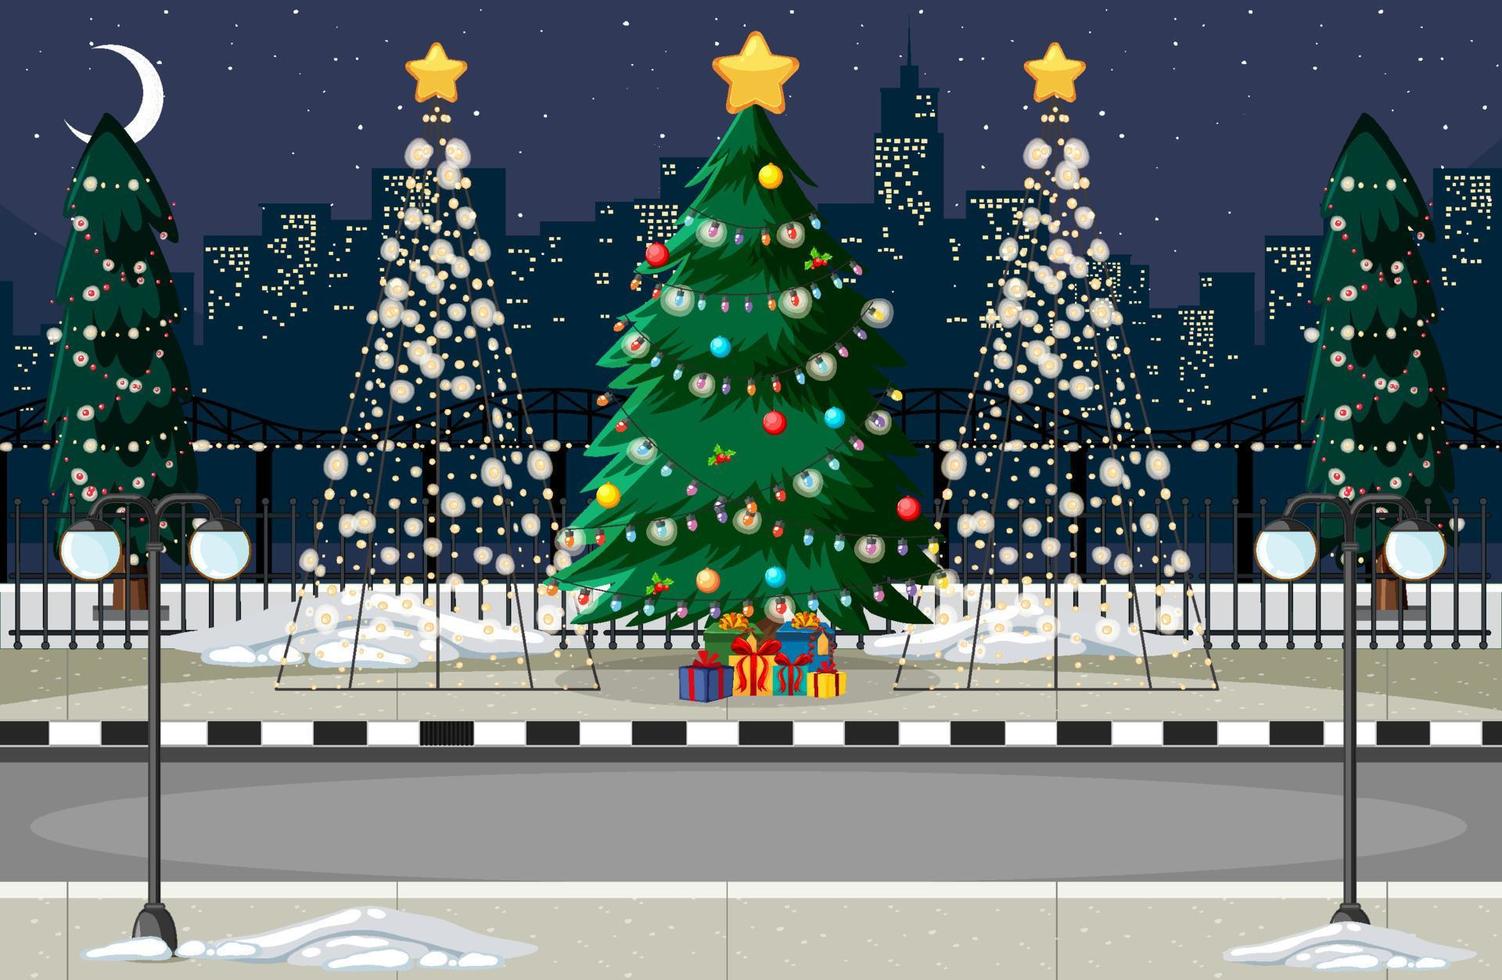 geschmückter weihnachtsbaum in der stadt bei nachtszene vektor